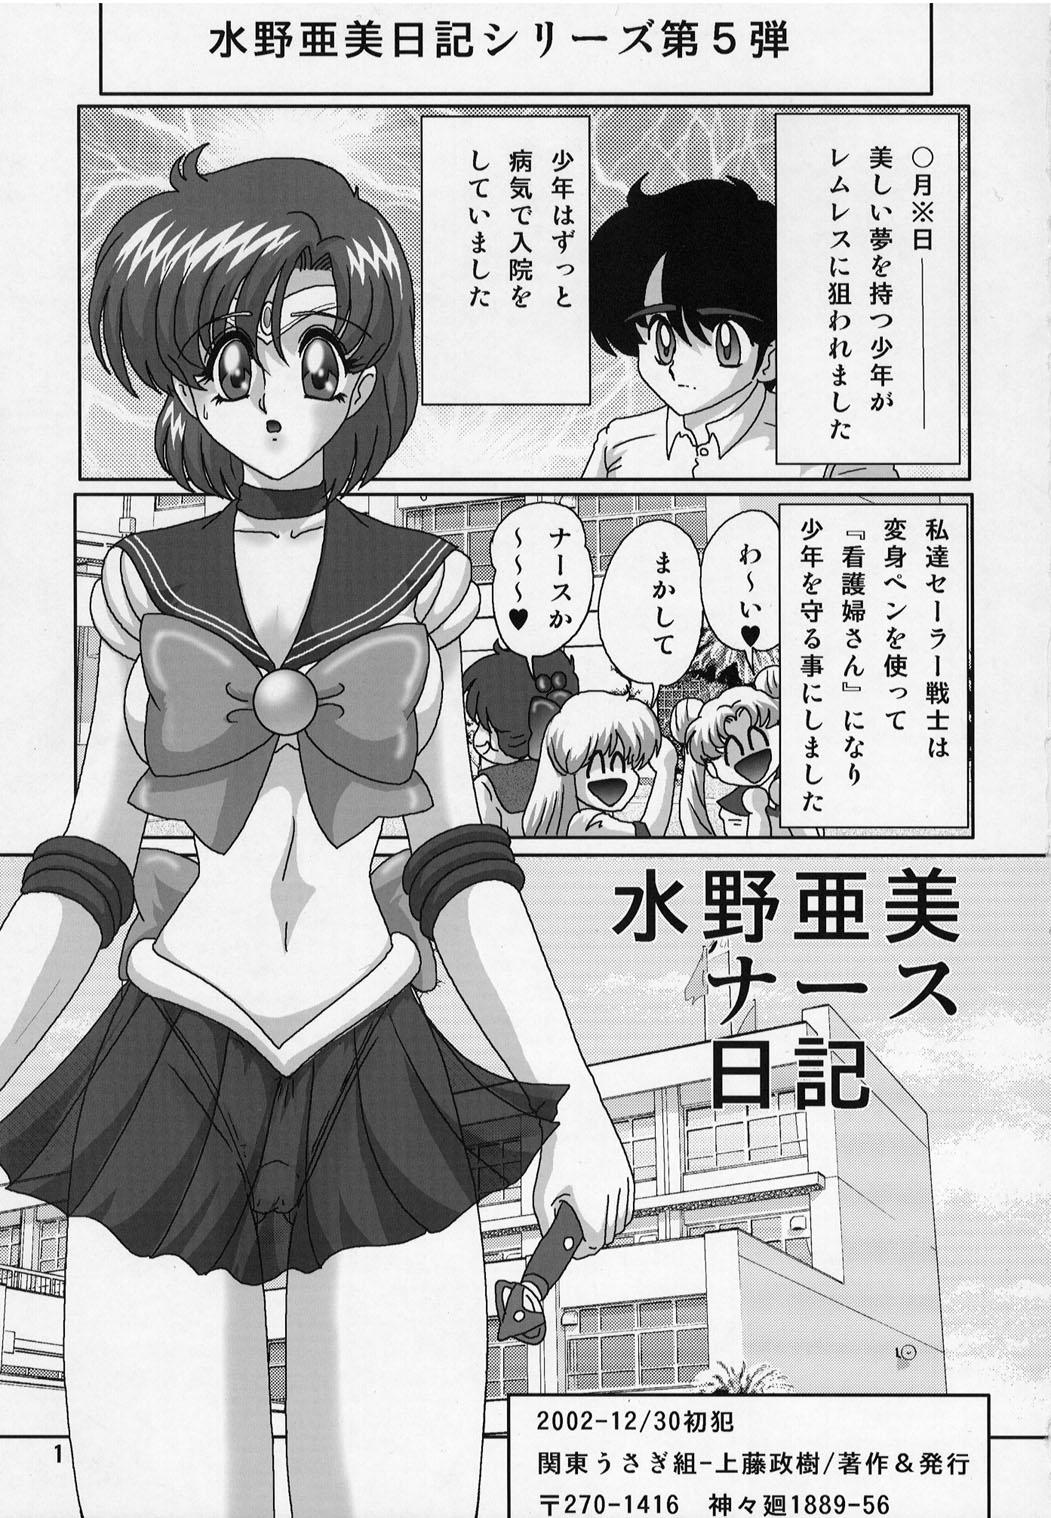 Humiliation Mizuno Ami Nasu Nikki - Sailor moon Peituda - Page 2